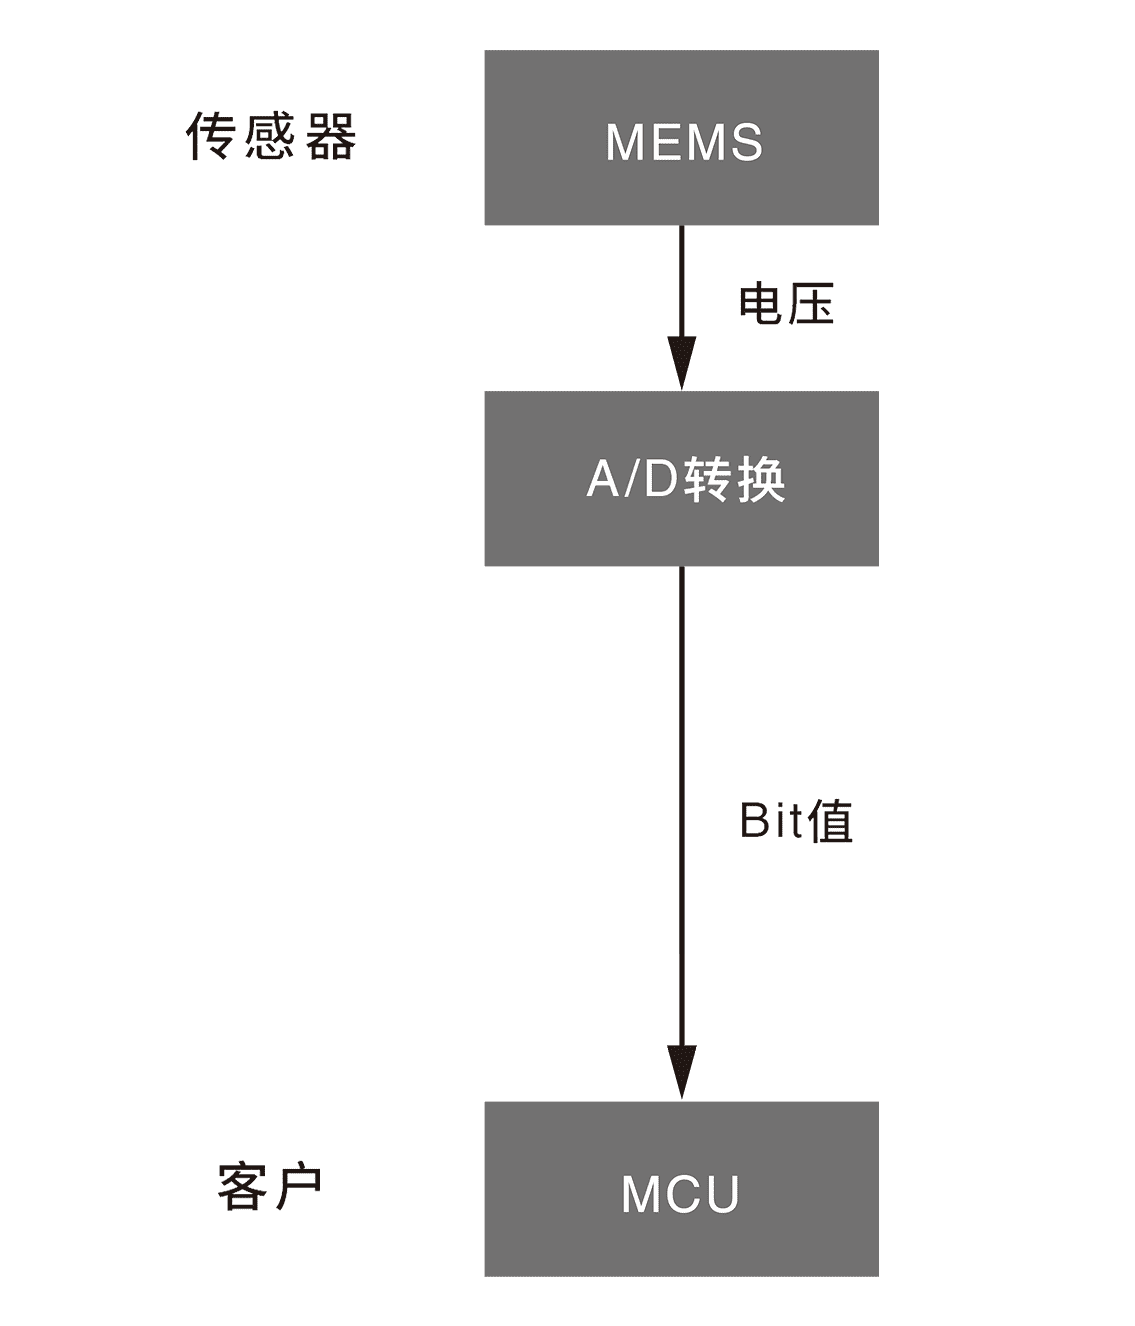 传感器 MEMS→(电压)→A/D转换(Bit值) 客户 MCU